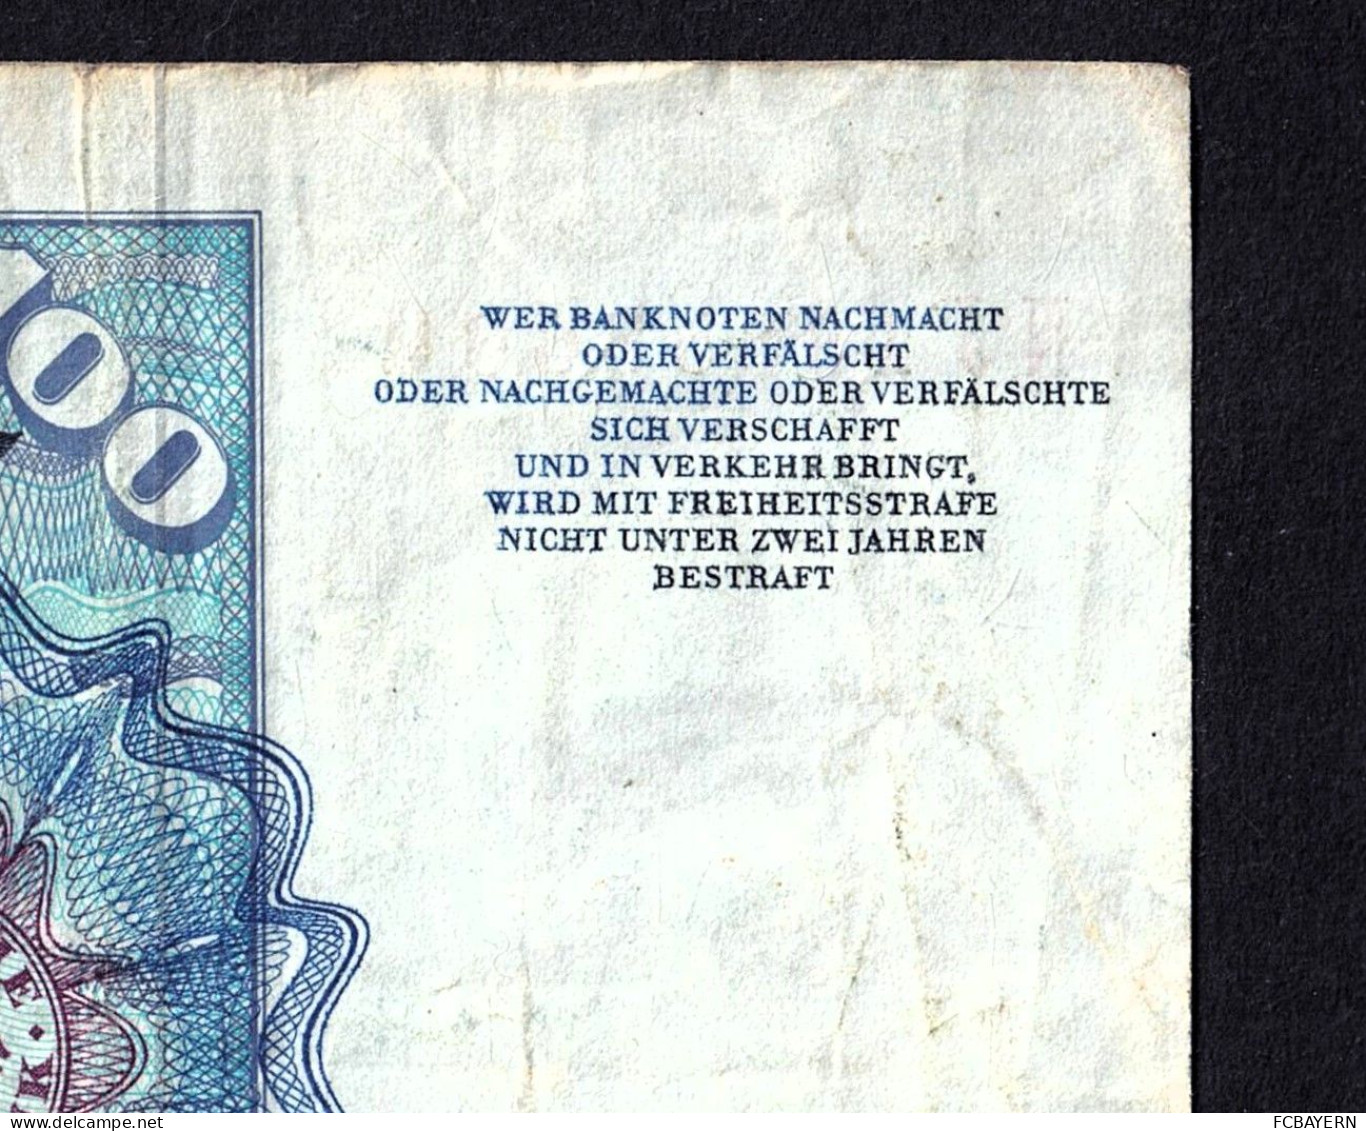 Deutsche Banknote 100 DM (NJ1685366Q) stark gebraucht - siehe Fotos